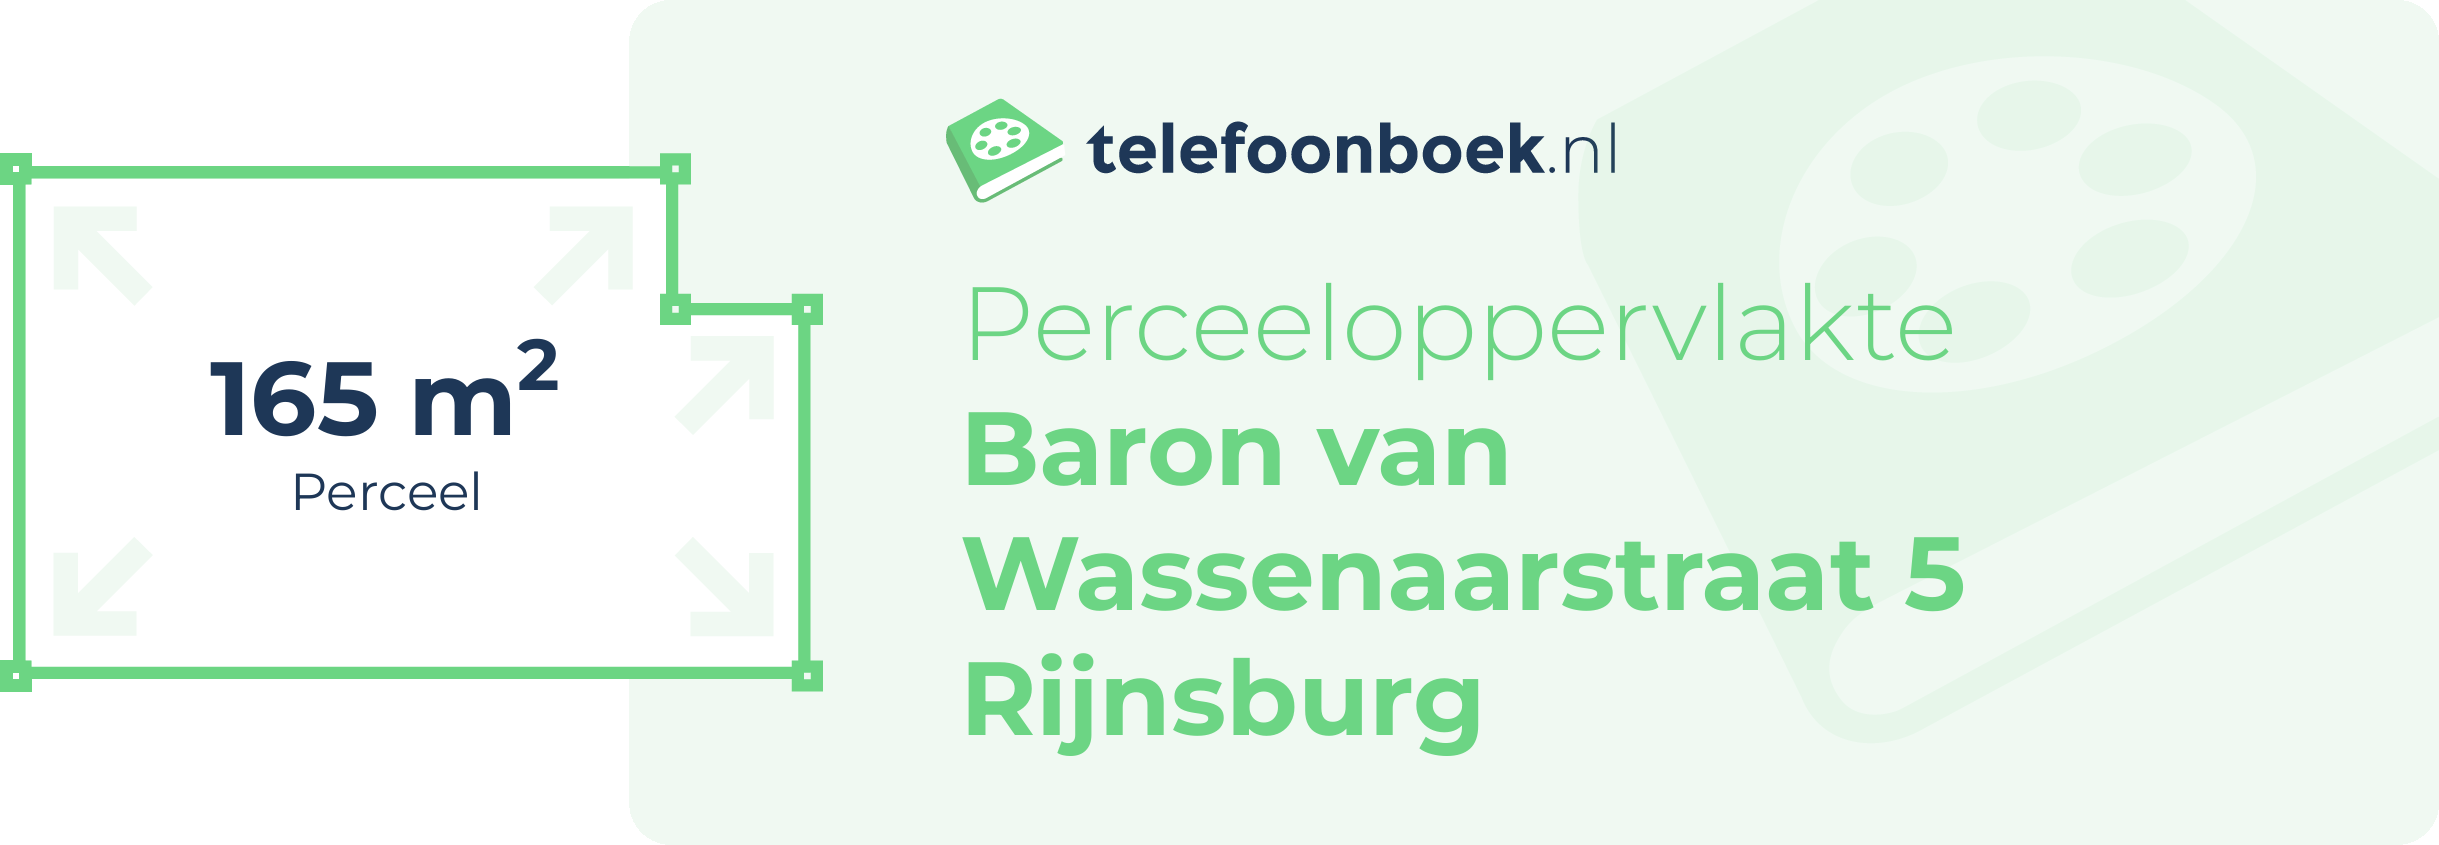 Perceeloppervlakte Baron Van Wassenaarstraat 5 Rijnsburg